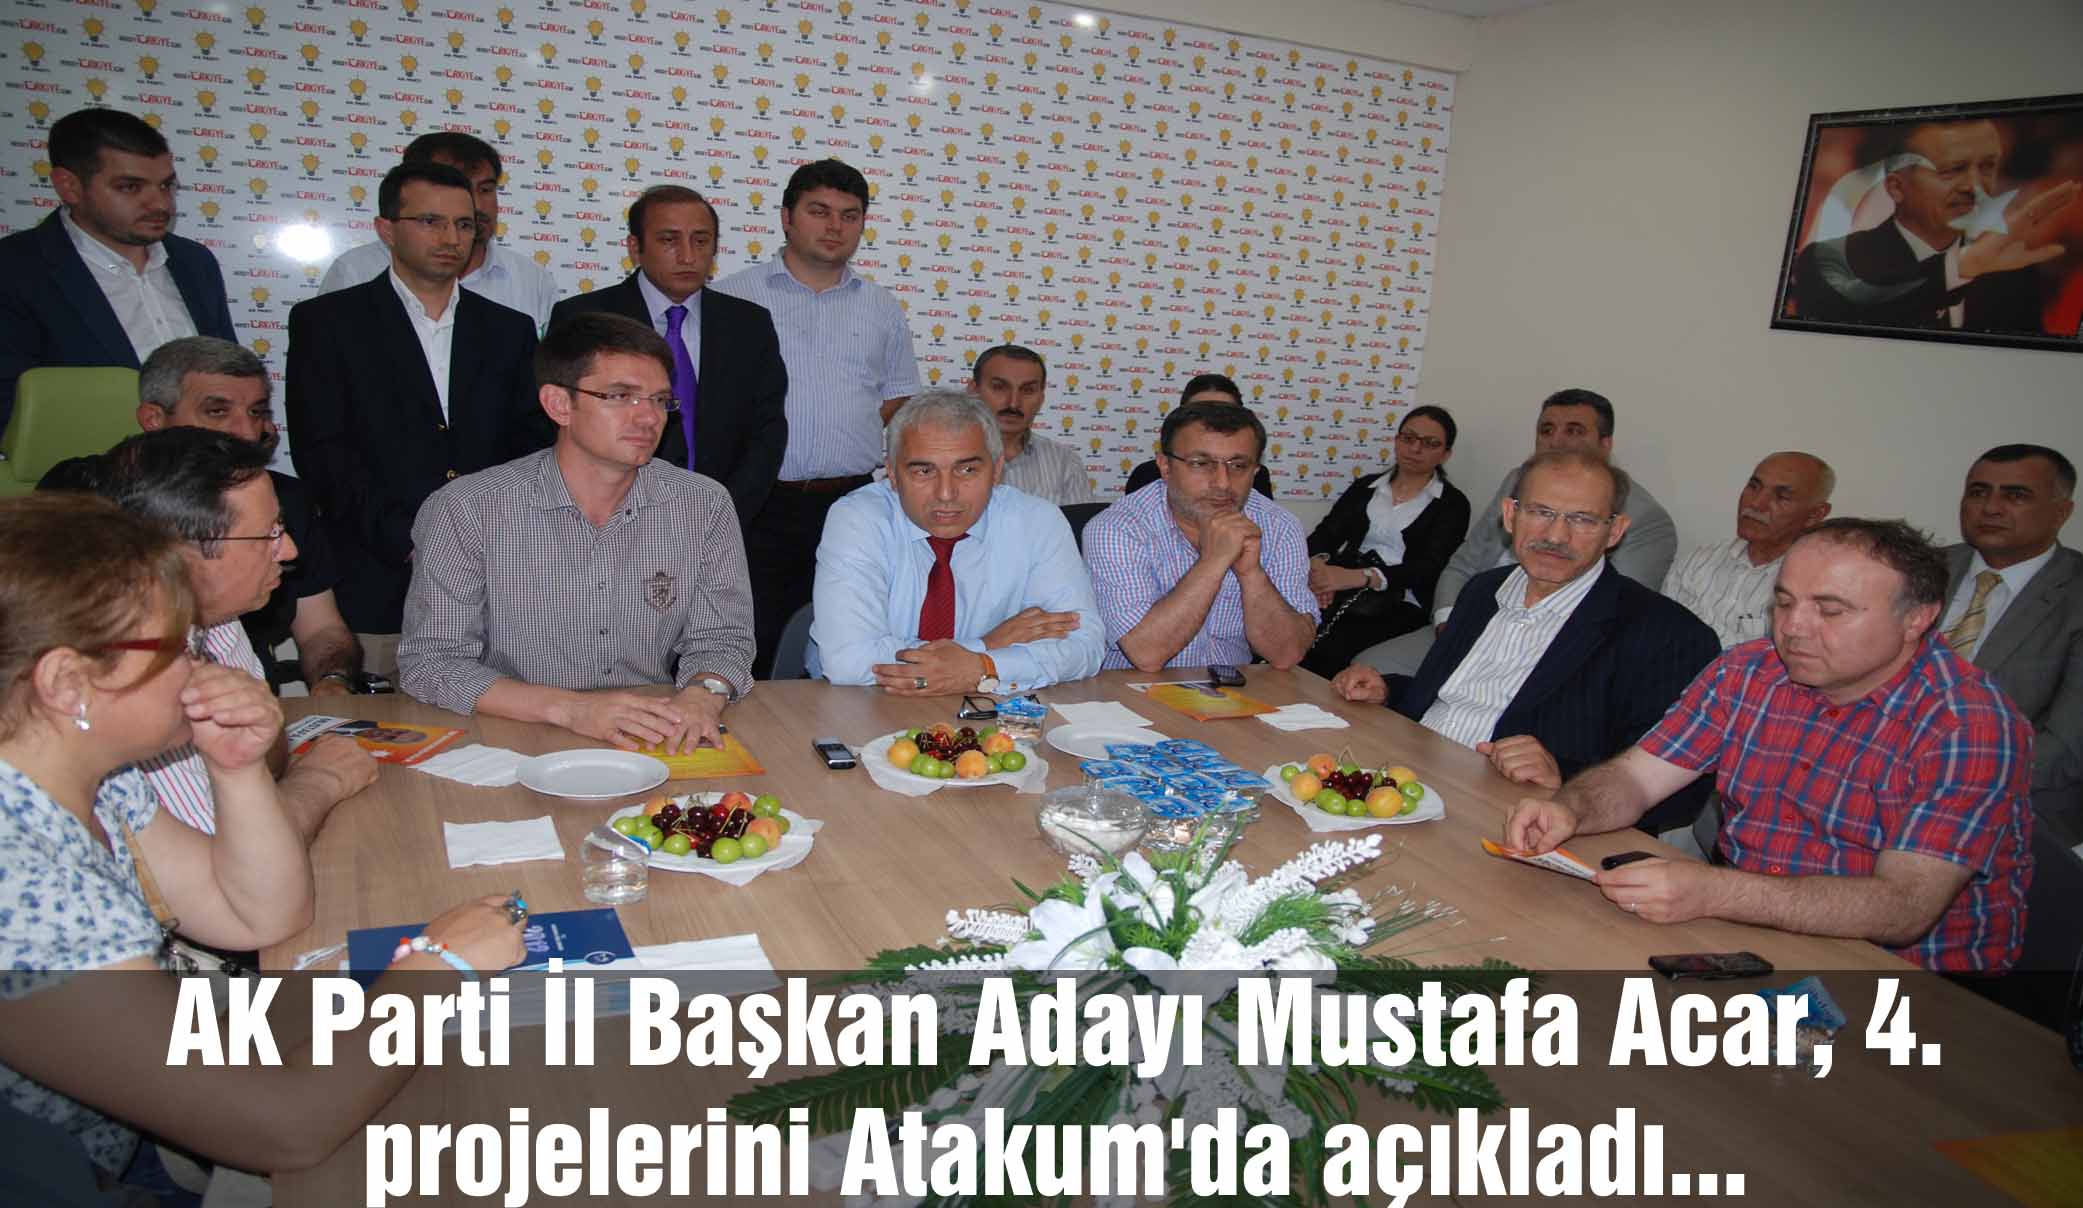 AK Parti İl Başkan Adayı Mustafa Acar, 4. projelerini Atakumda açıkladı...